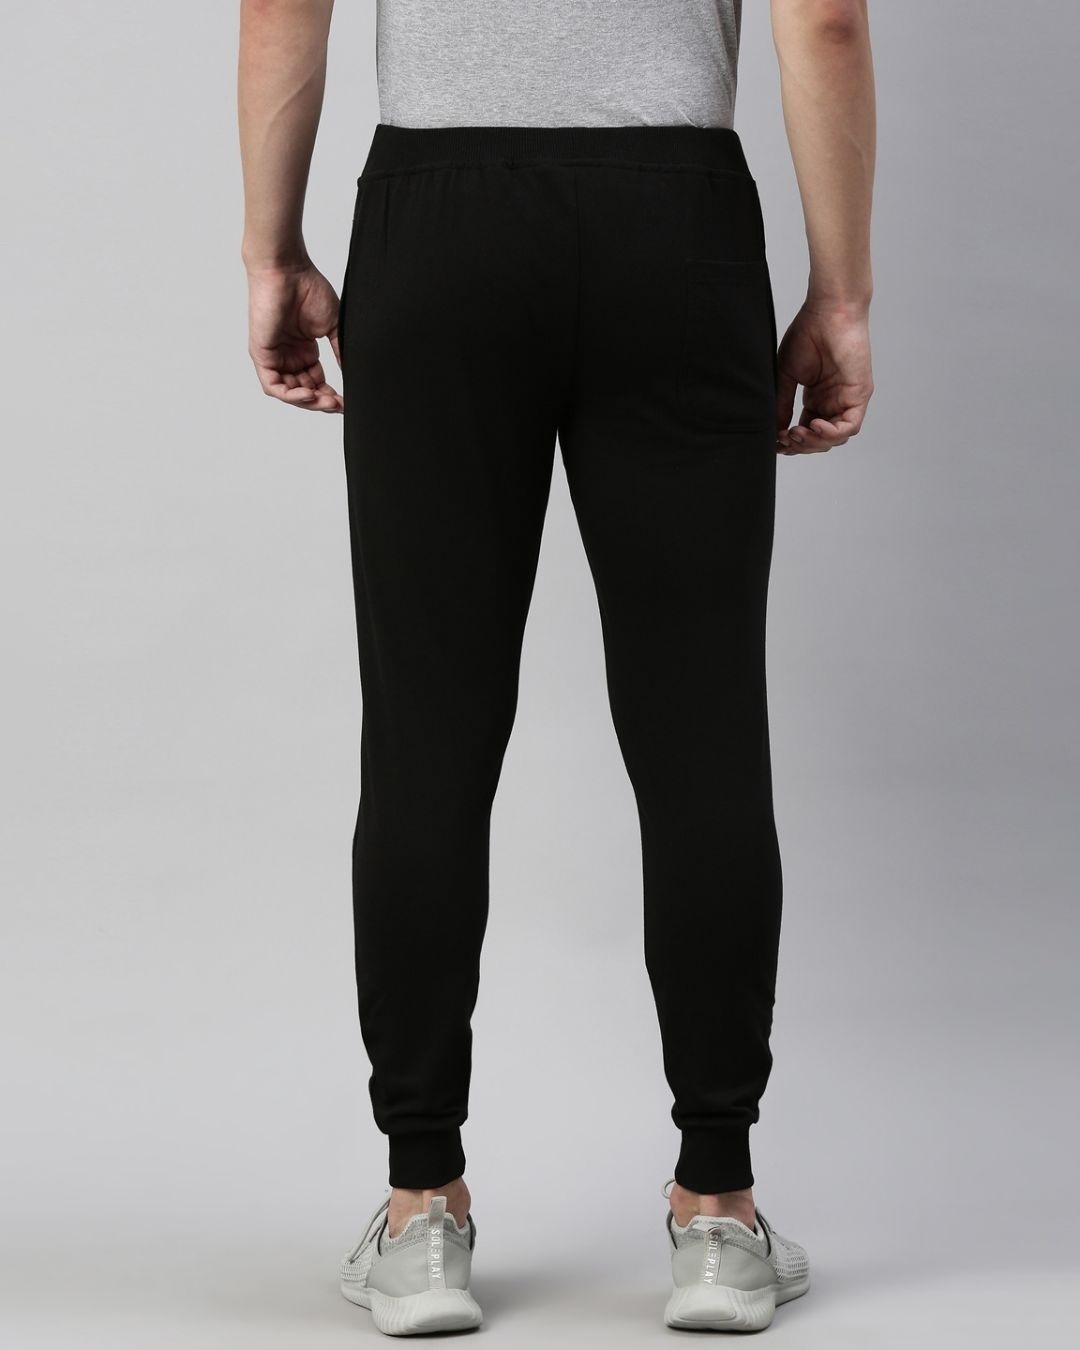 Shop Men's Black Embroidered Slim Fit Joggers-Design